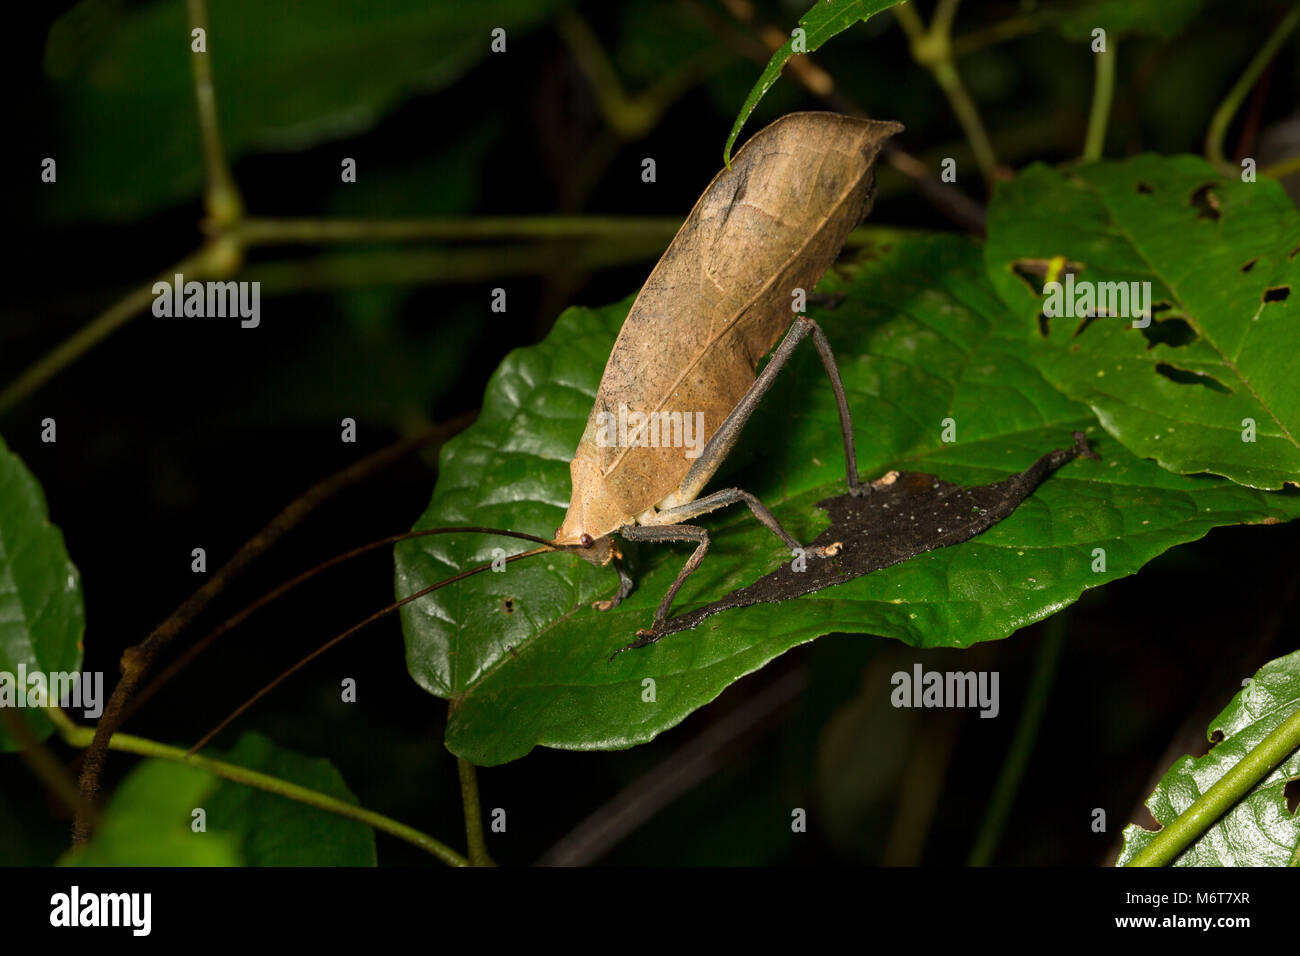 Bush Cricket oder katydid, in der Nähe der Bakhuis, fotografiert in der Nacht im Dschungel. Suriname, Südamerika Stockfoto